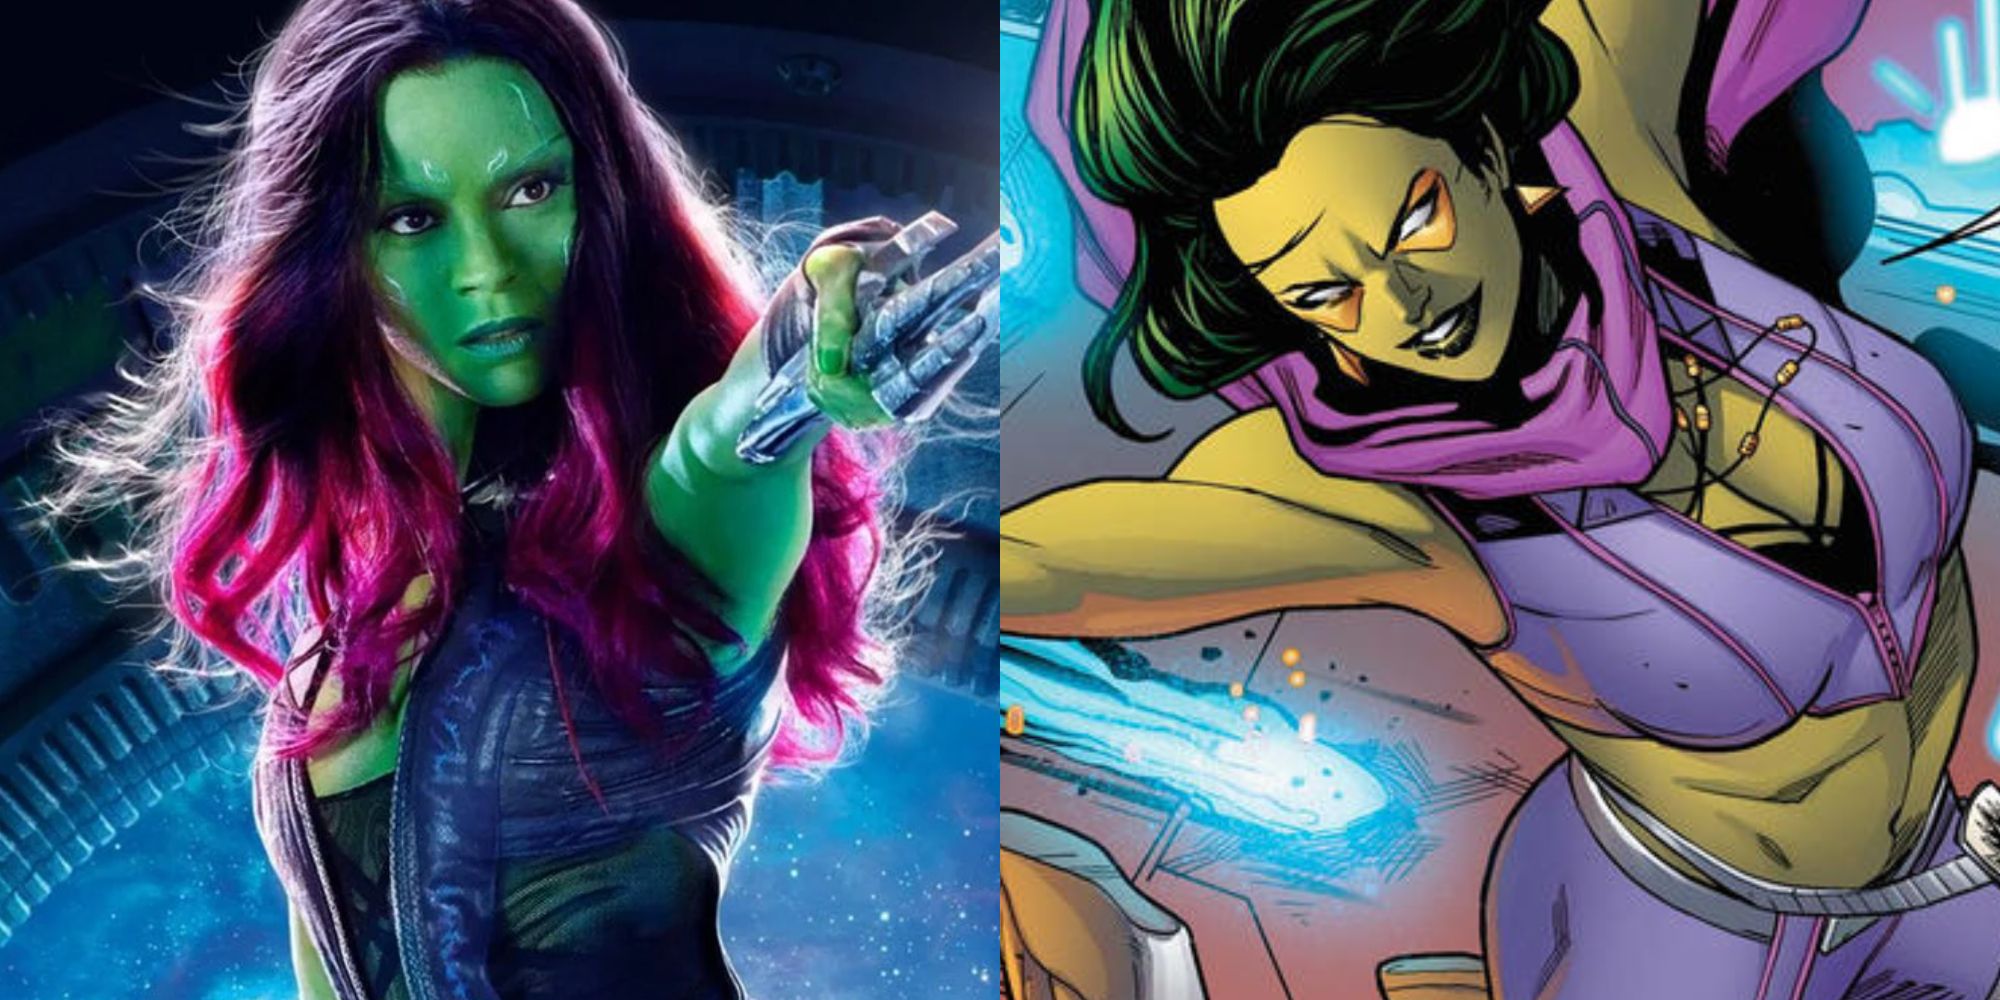 Imagem dividida de Gamora nos quadrinhos do MCU e da Marvel